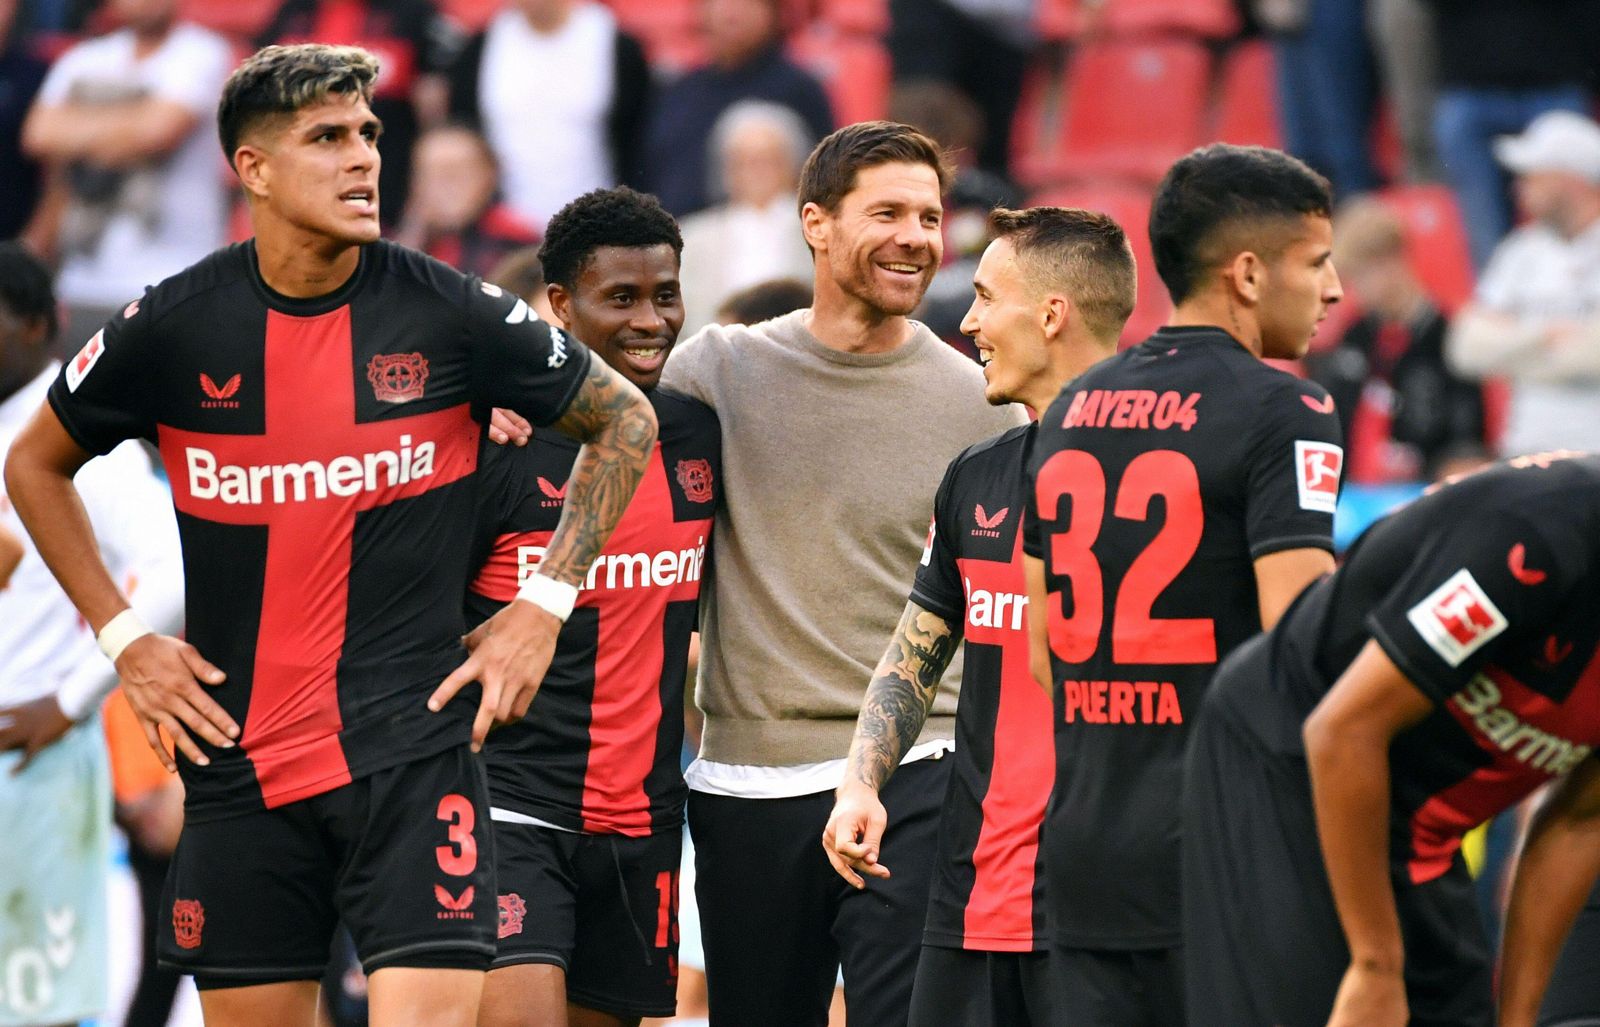 Bayer Leverkusen poised for historic Bundesliga triumph